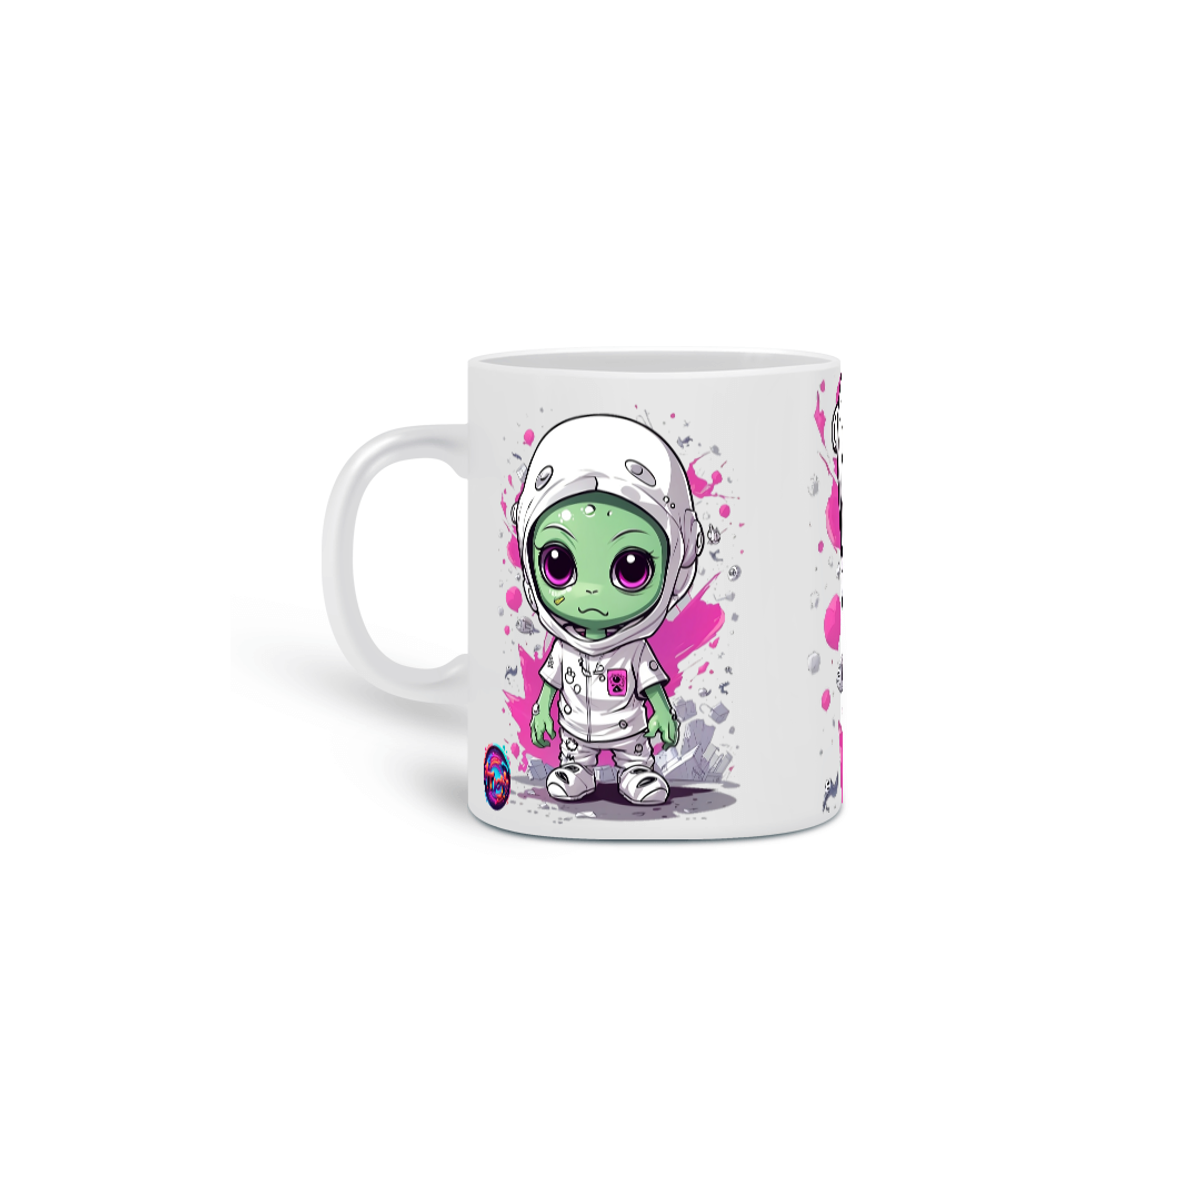 Nome do produto: Alien cute cartoon - Caneca